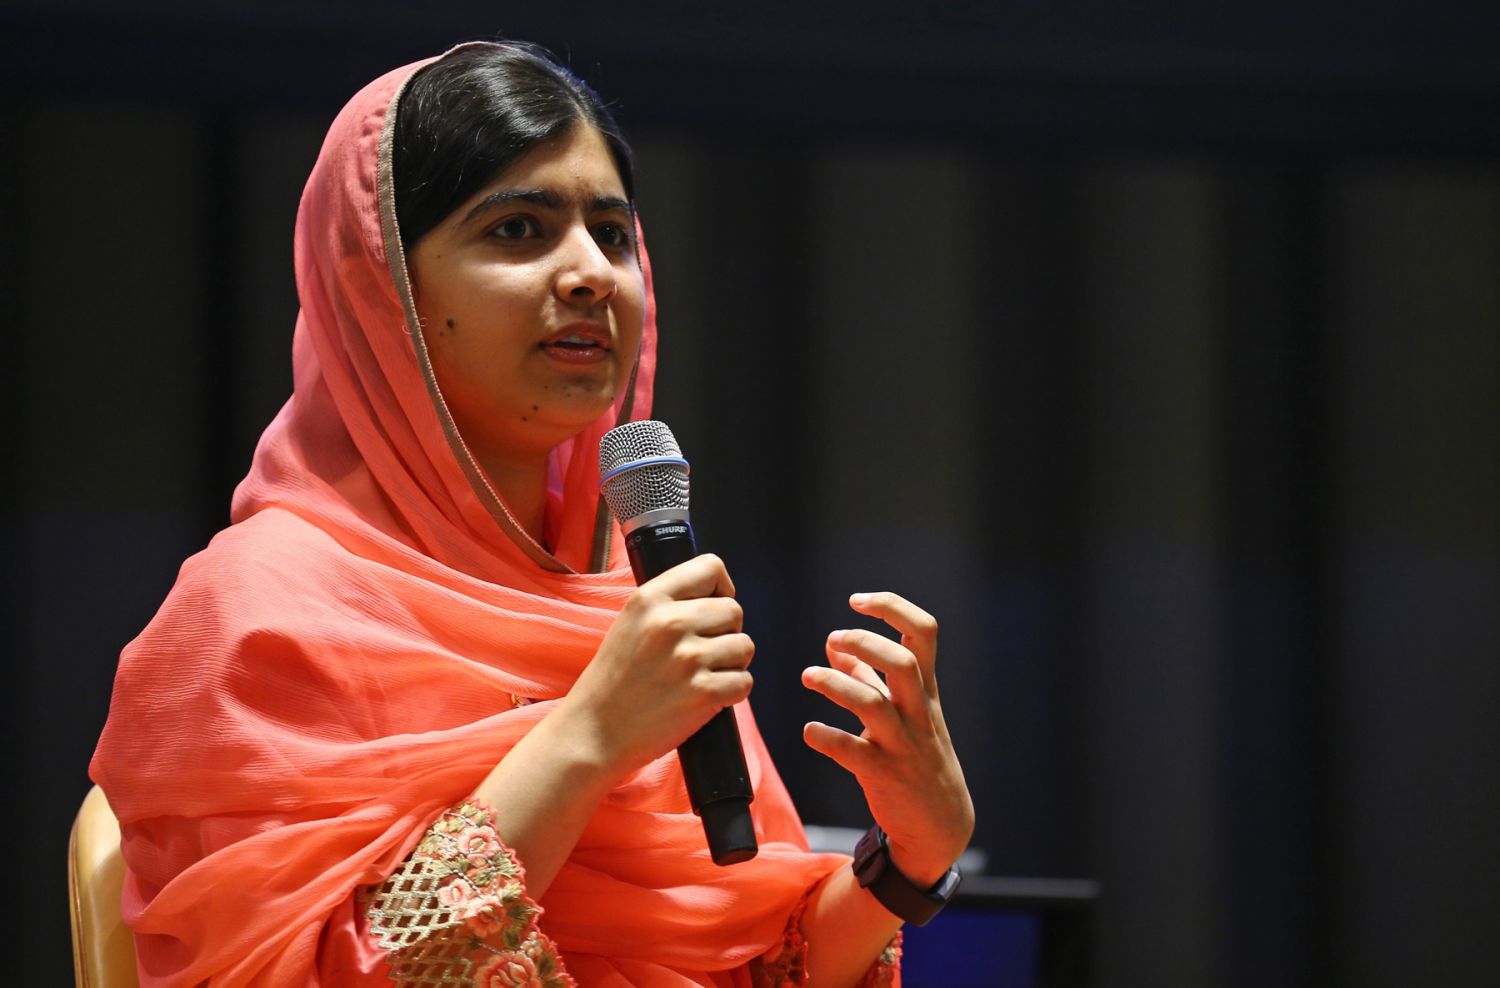 Las campañas de Malala Yousafzai